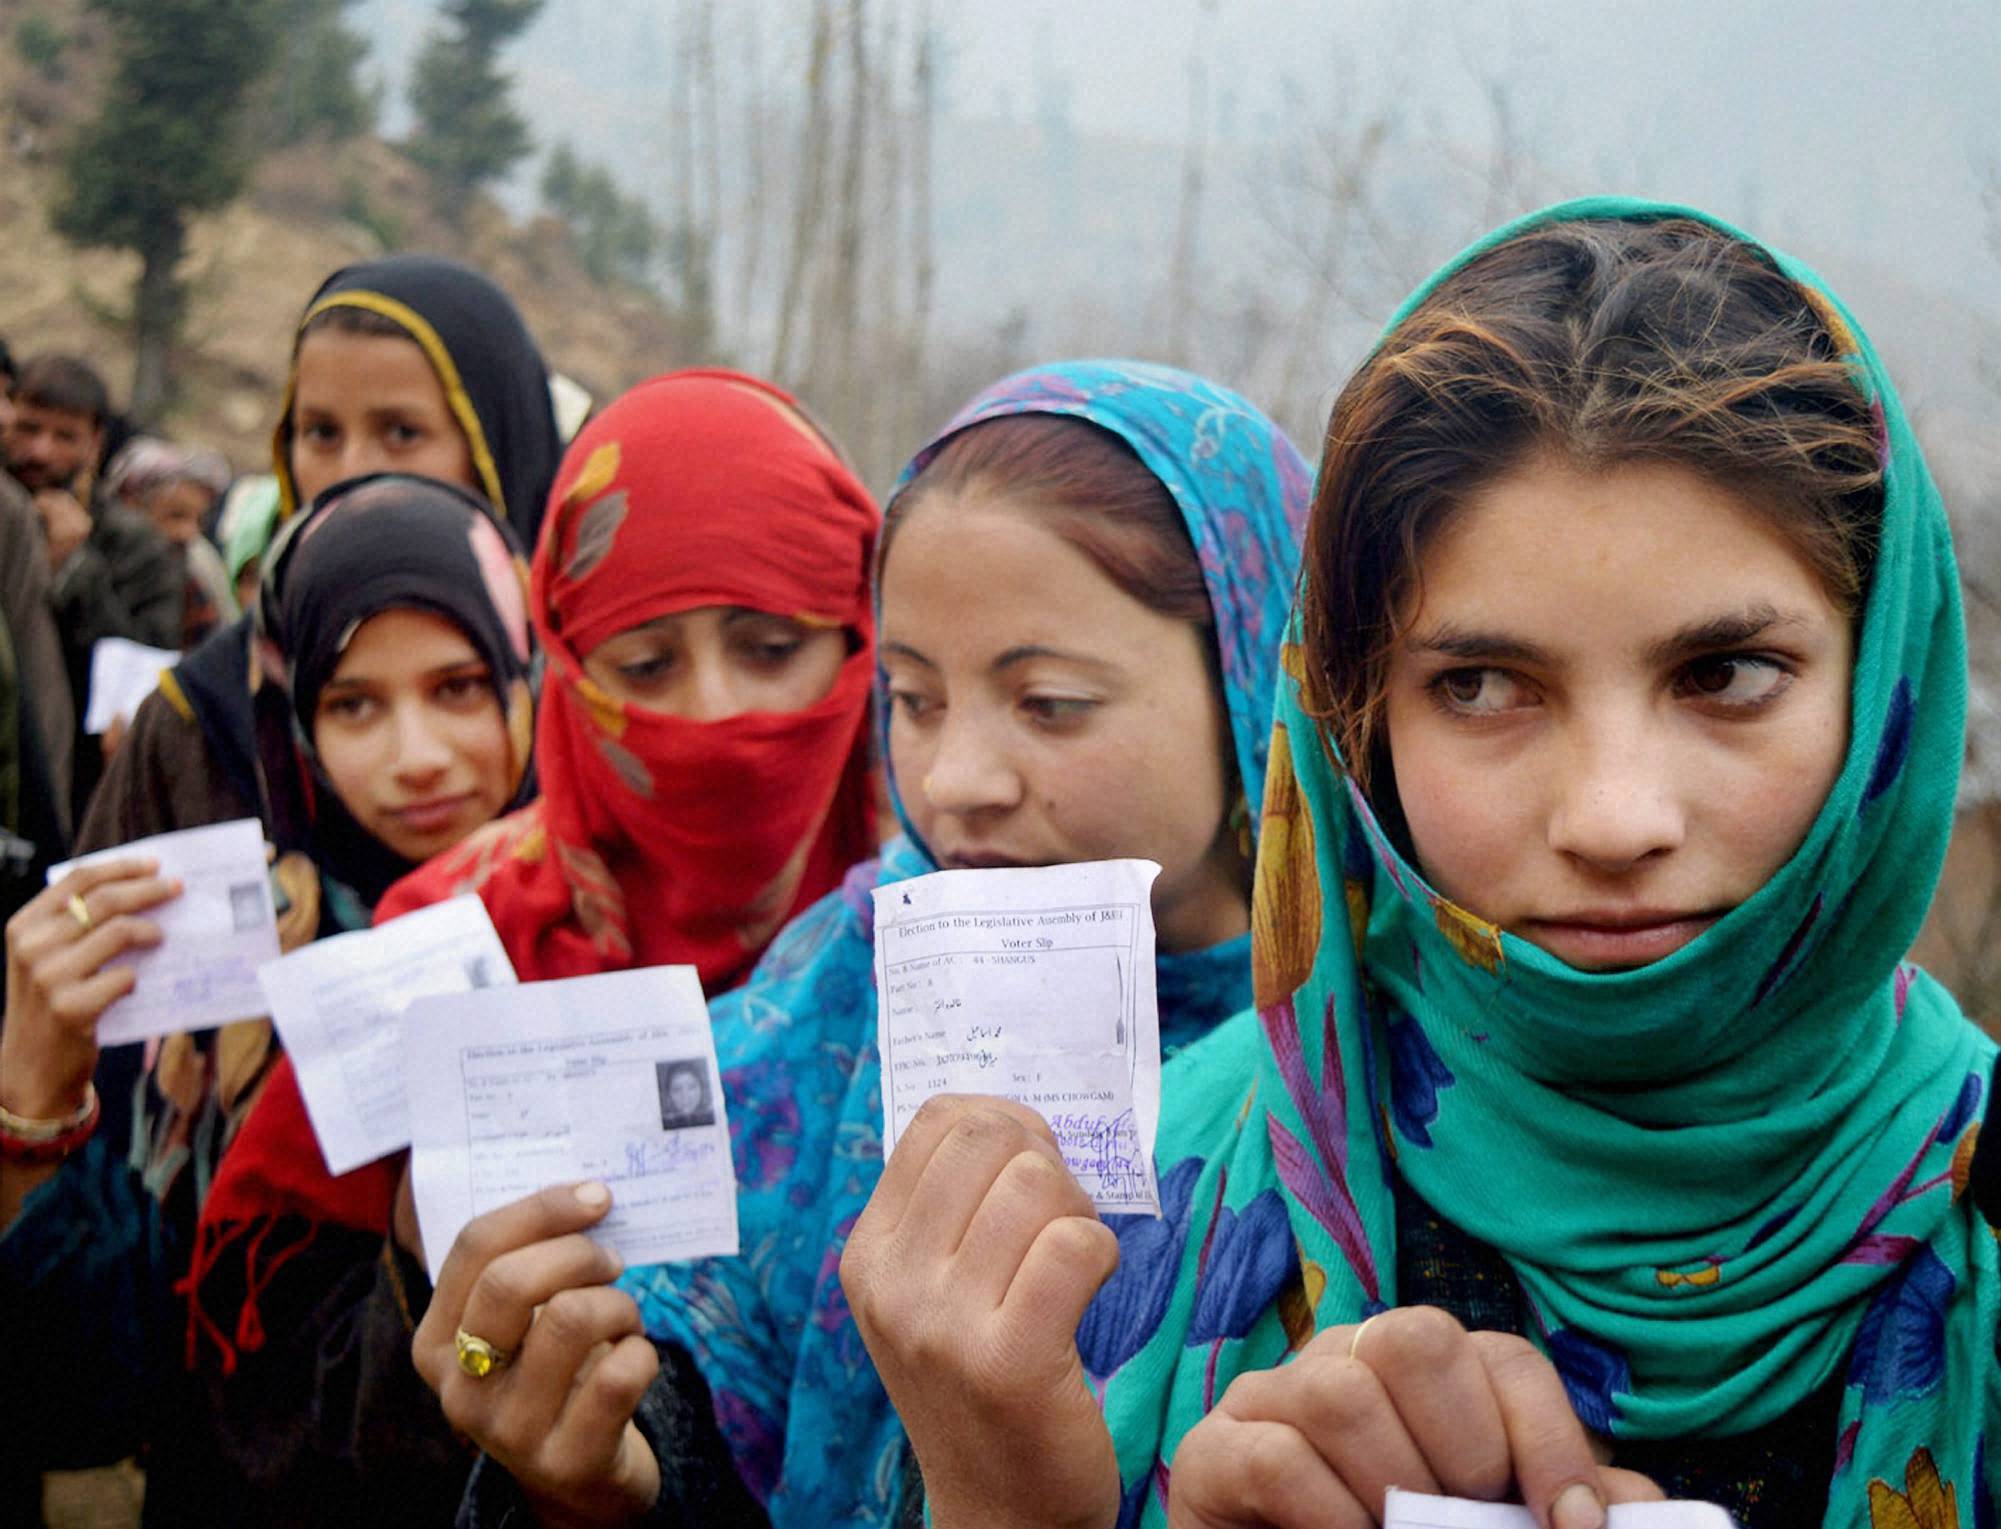 जम्मू कश्मीर में धारा 370 हटने के बाद घाटी में पहली बार महिला मतदाता पुरुषों से अधिक, जानकार बोले- आश्चर्यजनक बदलाव